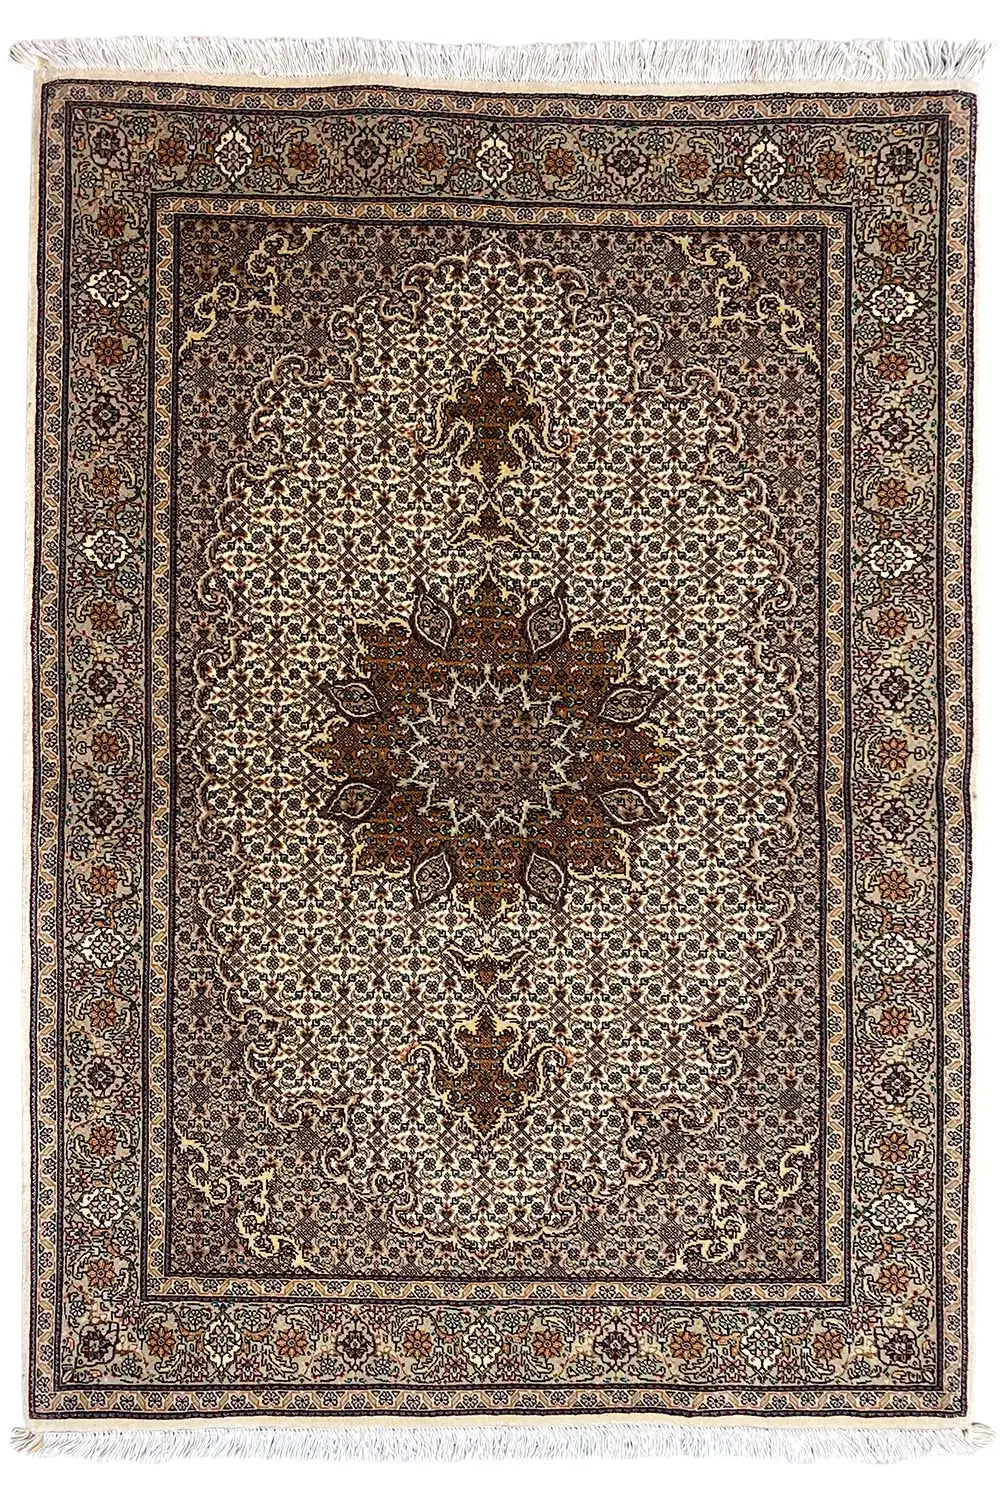 Täbriz - Mahi (146x100cm) - German Carpet Shop